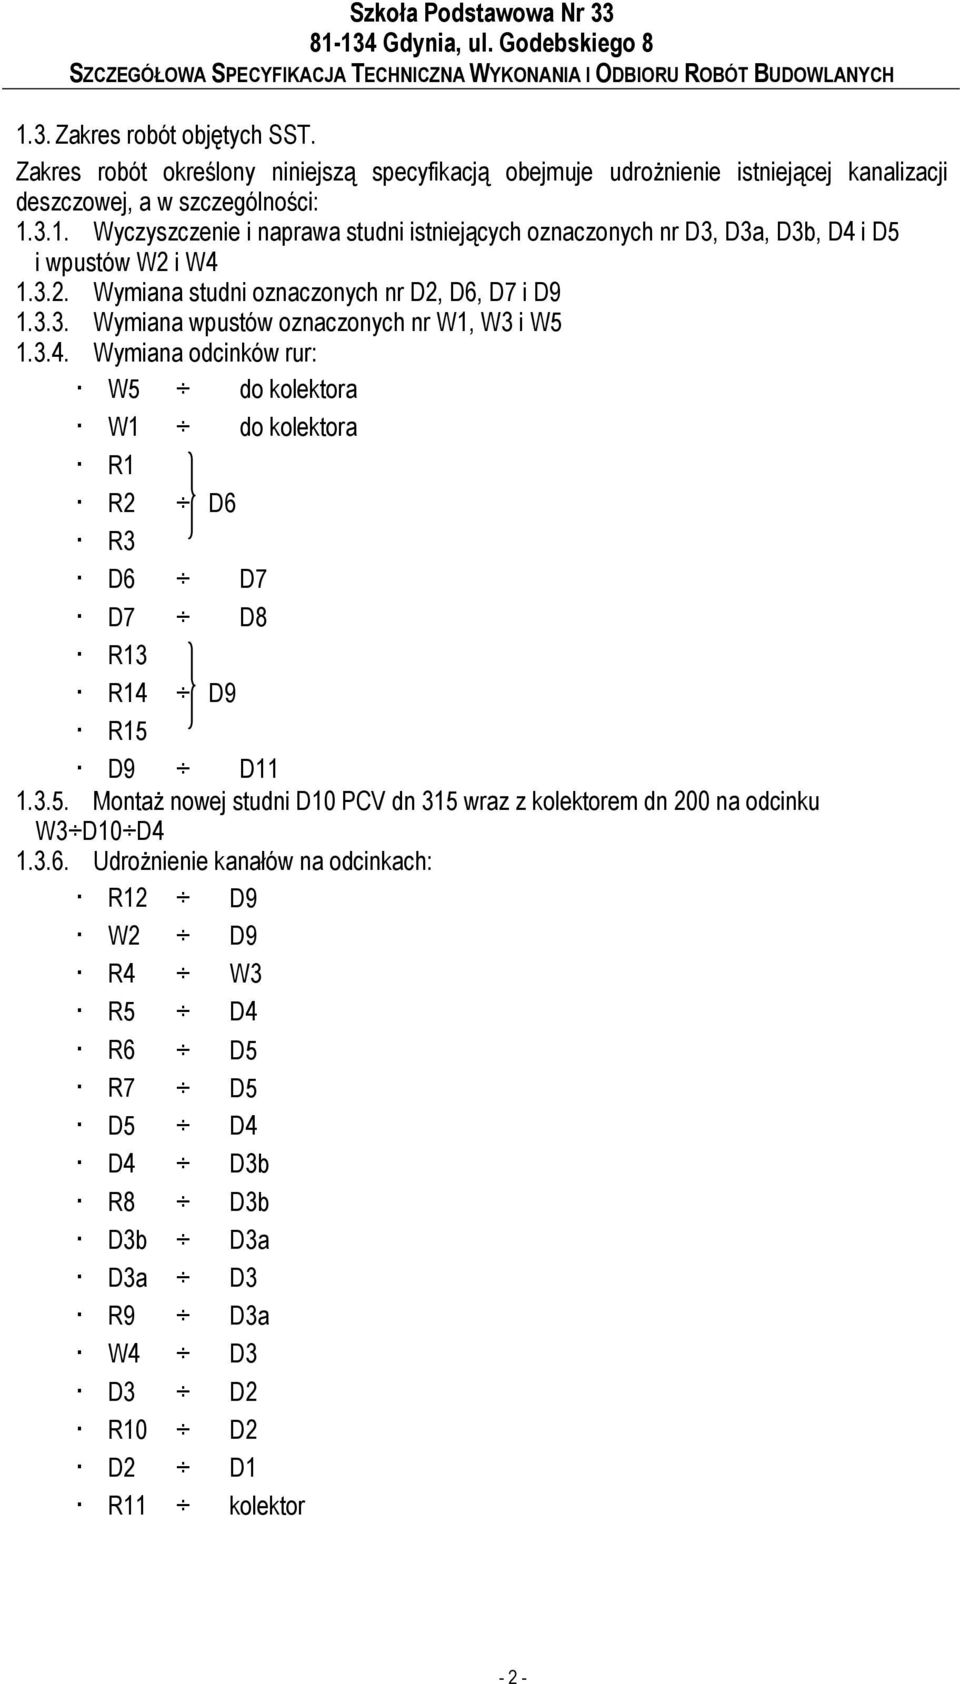 Wymiana odcinków rur: W5 do kolektora W1 do kolektora R1 R2 D6 R3 D6 D7 D7 D8 R13 R14 D9 R15 D9 D11 1.3.5. MontaŜ nowej studni D10 PCV dn 315 wraz z kolektorem dn 200 na odcinku W3 D10 D4 1.